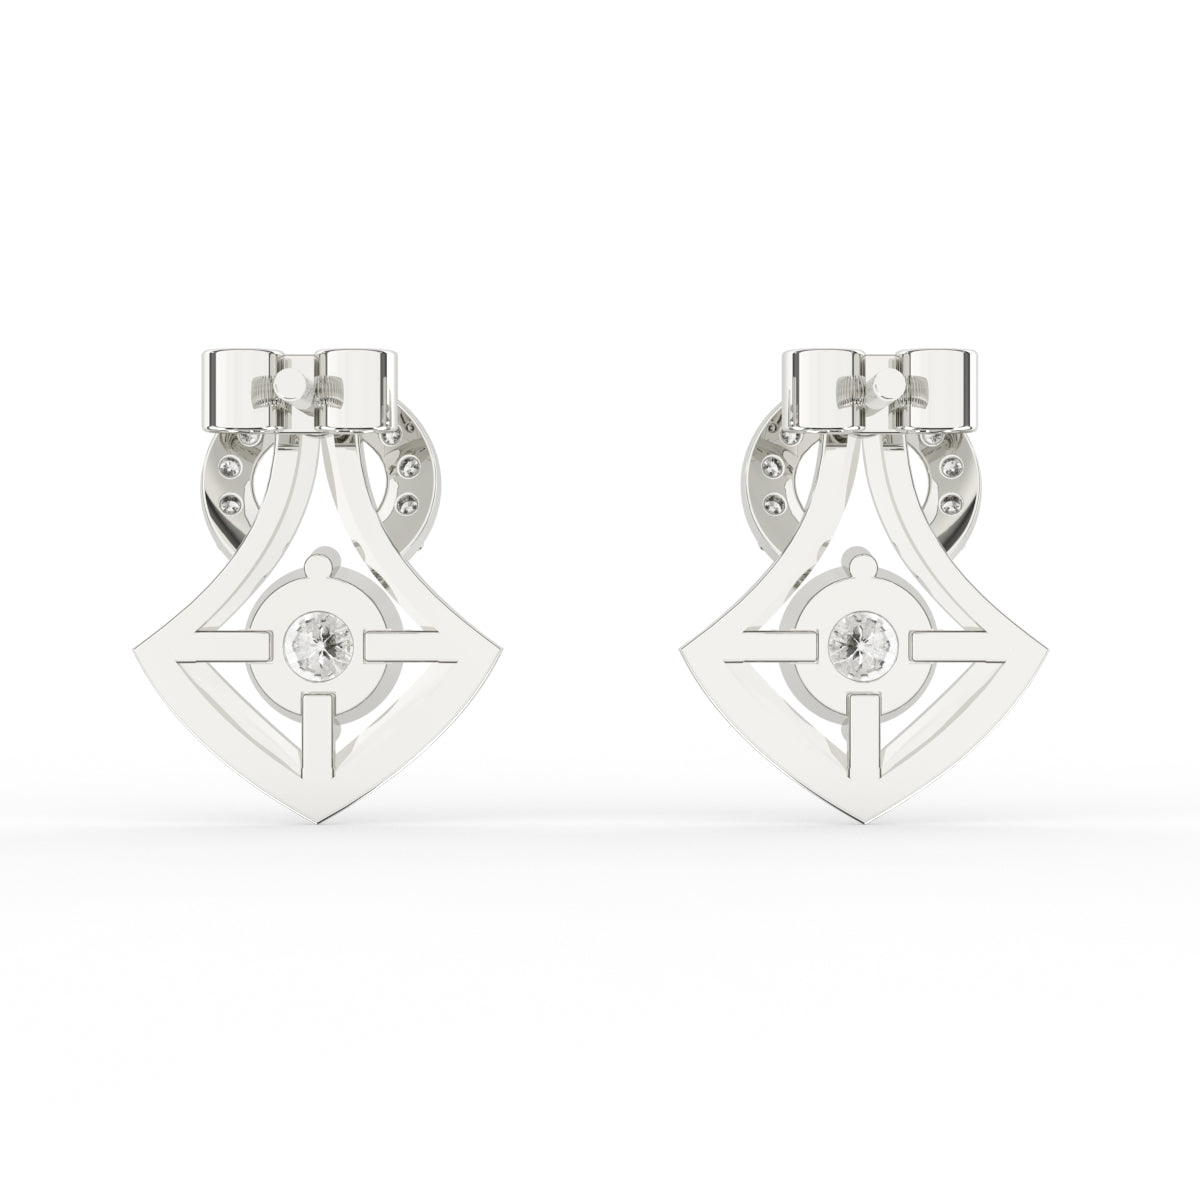 Designer diamond earrings